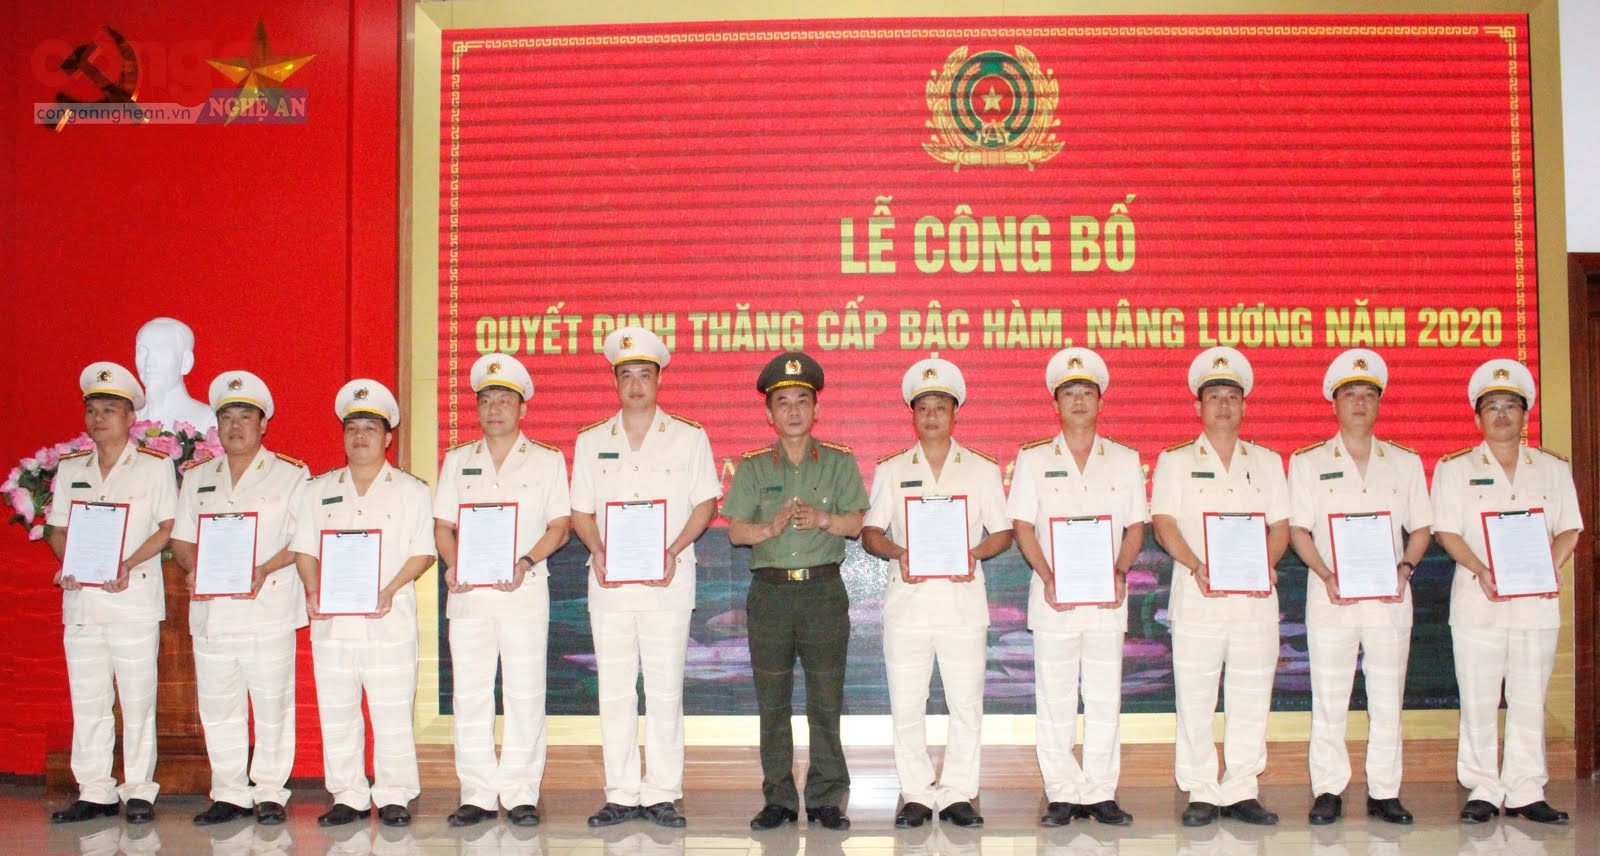 Đại tá Lê Xuân Hoài, Phó Giám đốc Công an tỉnh trao quyết định thăng cấp bậc hàm tại buổi lễ